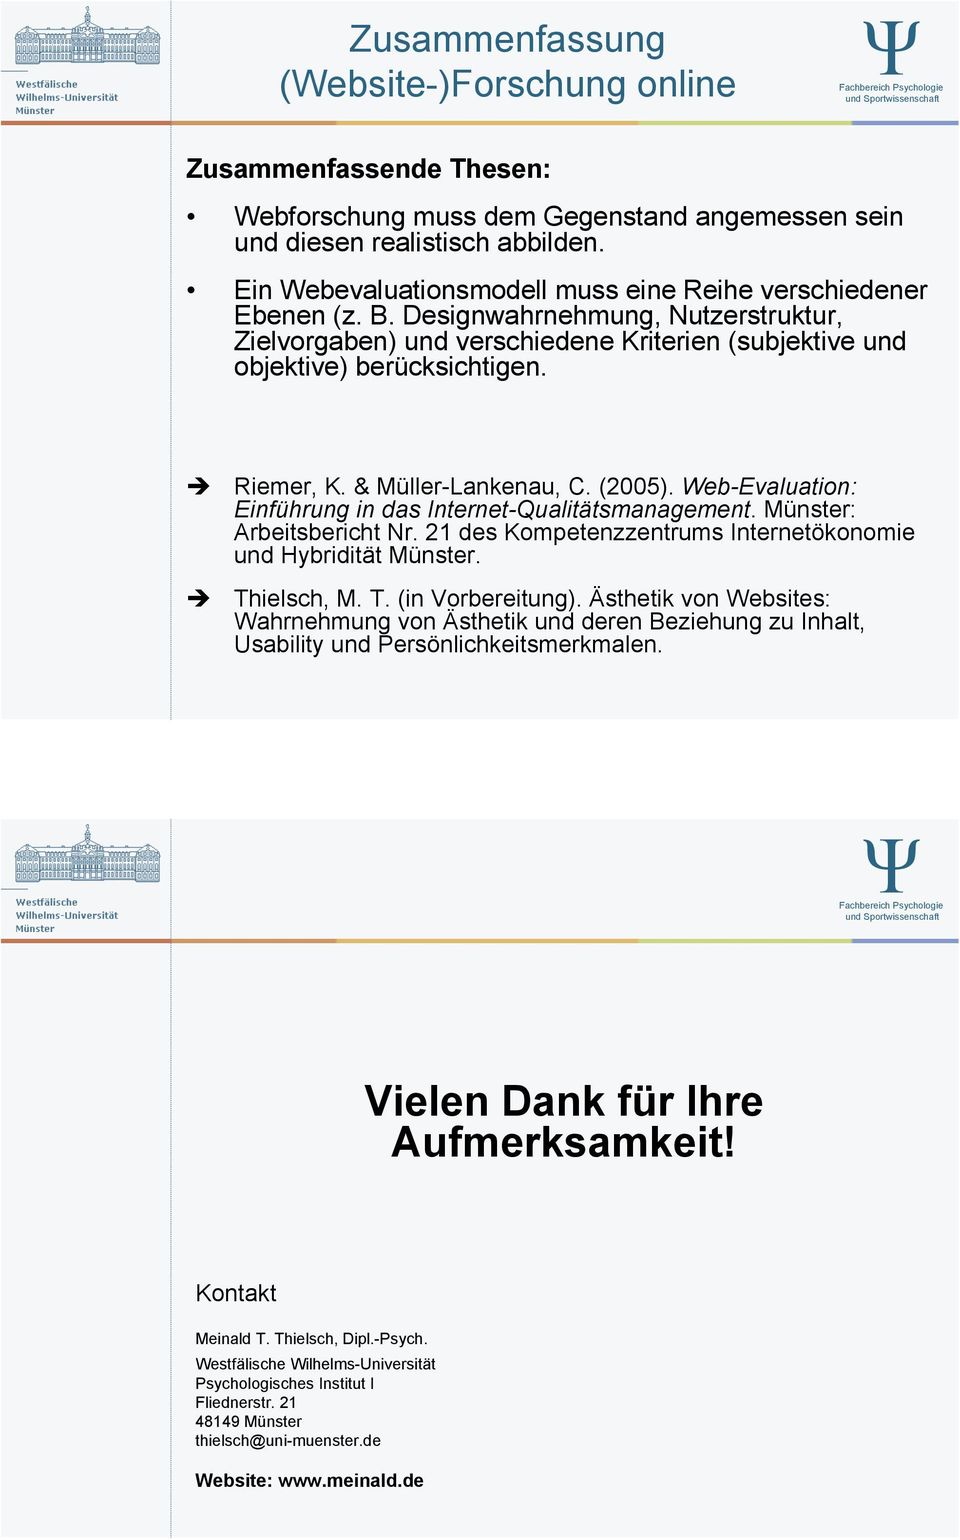 " Riemer, K. & Müller-Lankenau, C. (2005). Web-Evaluation: Einführung in das Internet-Qualitätsmanagement. Münster: Arbeitsbericht Nr. 21 des Kompetenzzentrums Internetökonomie und Hybridität Münster.